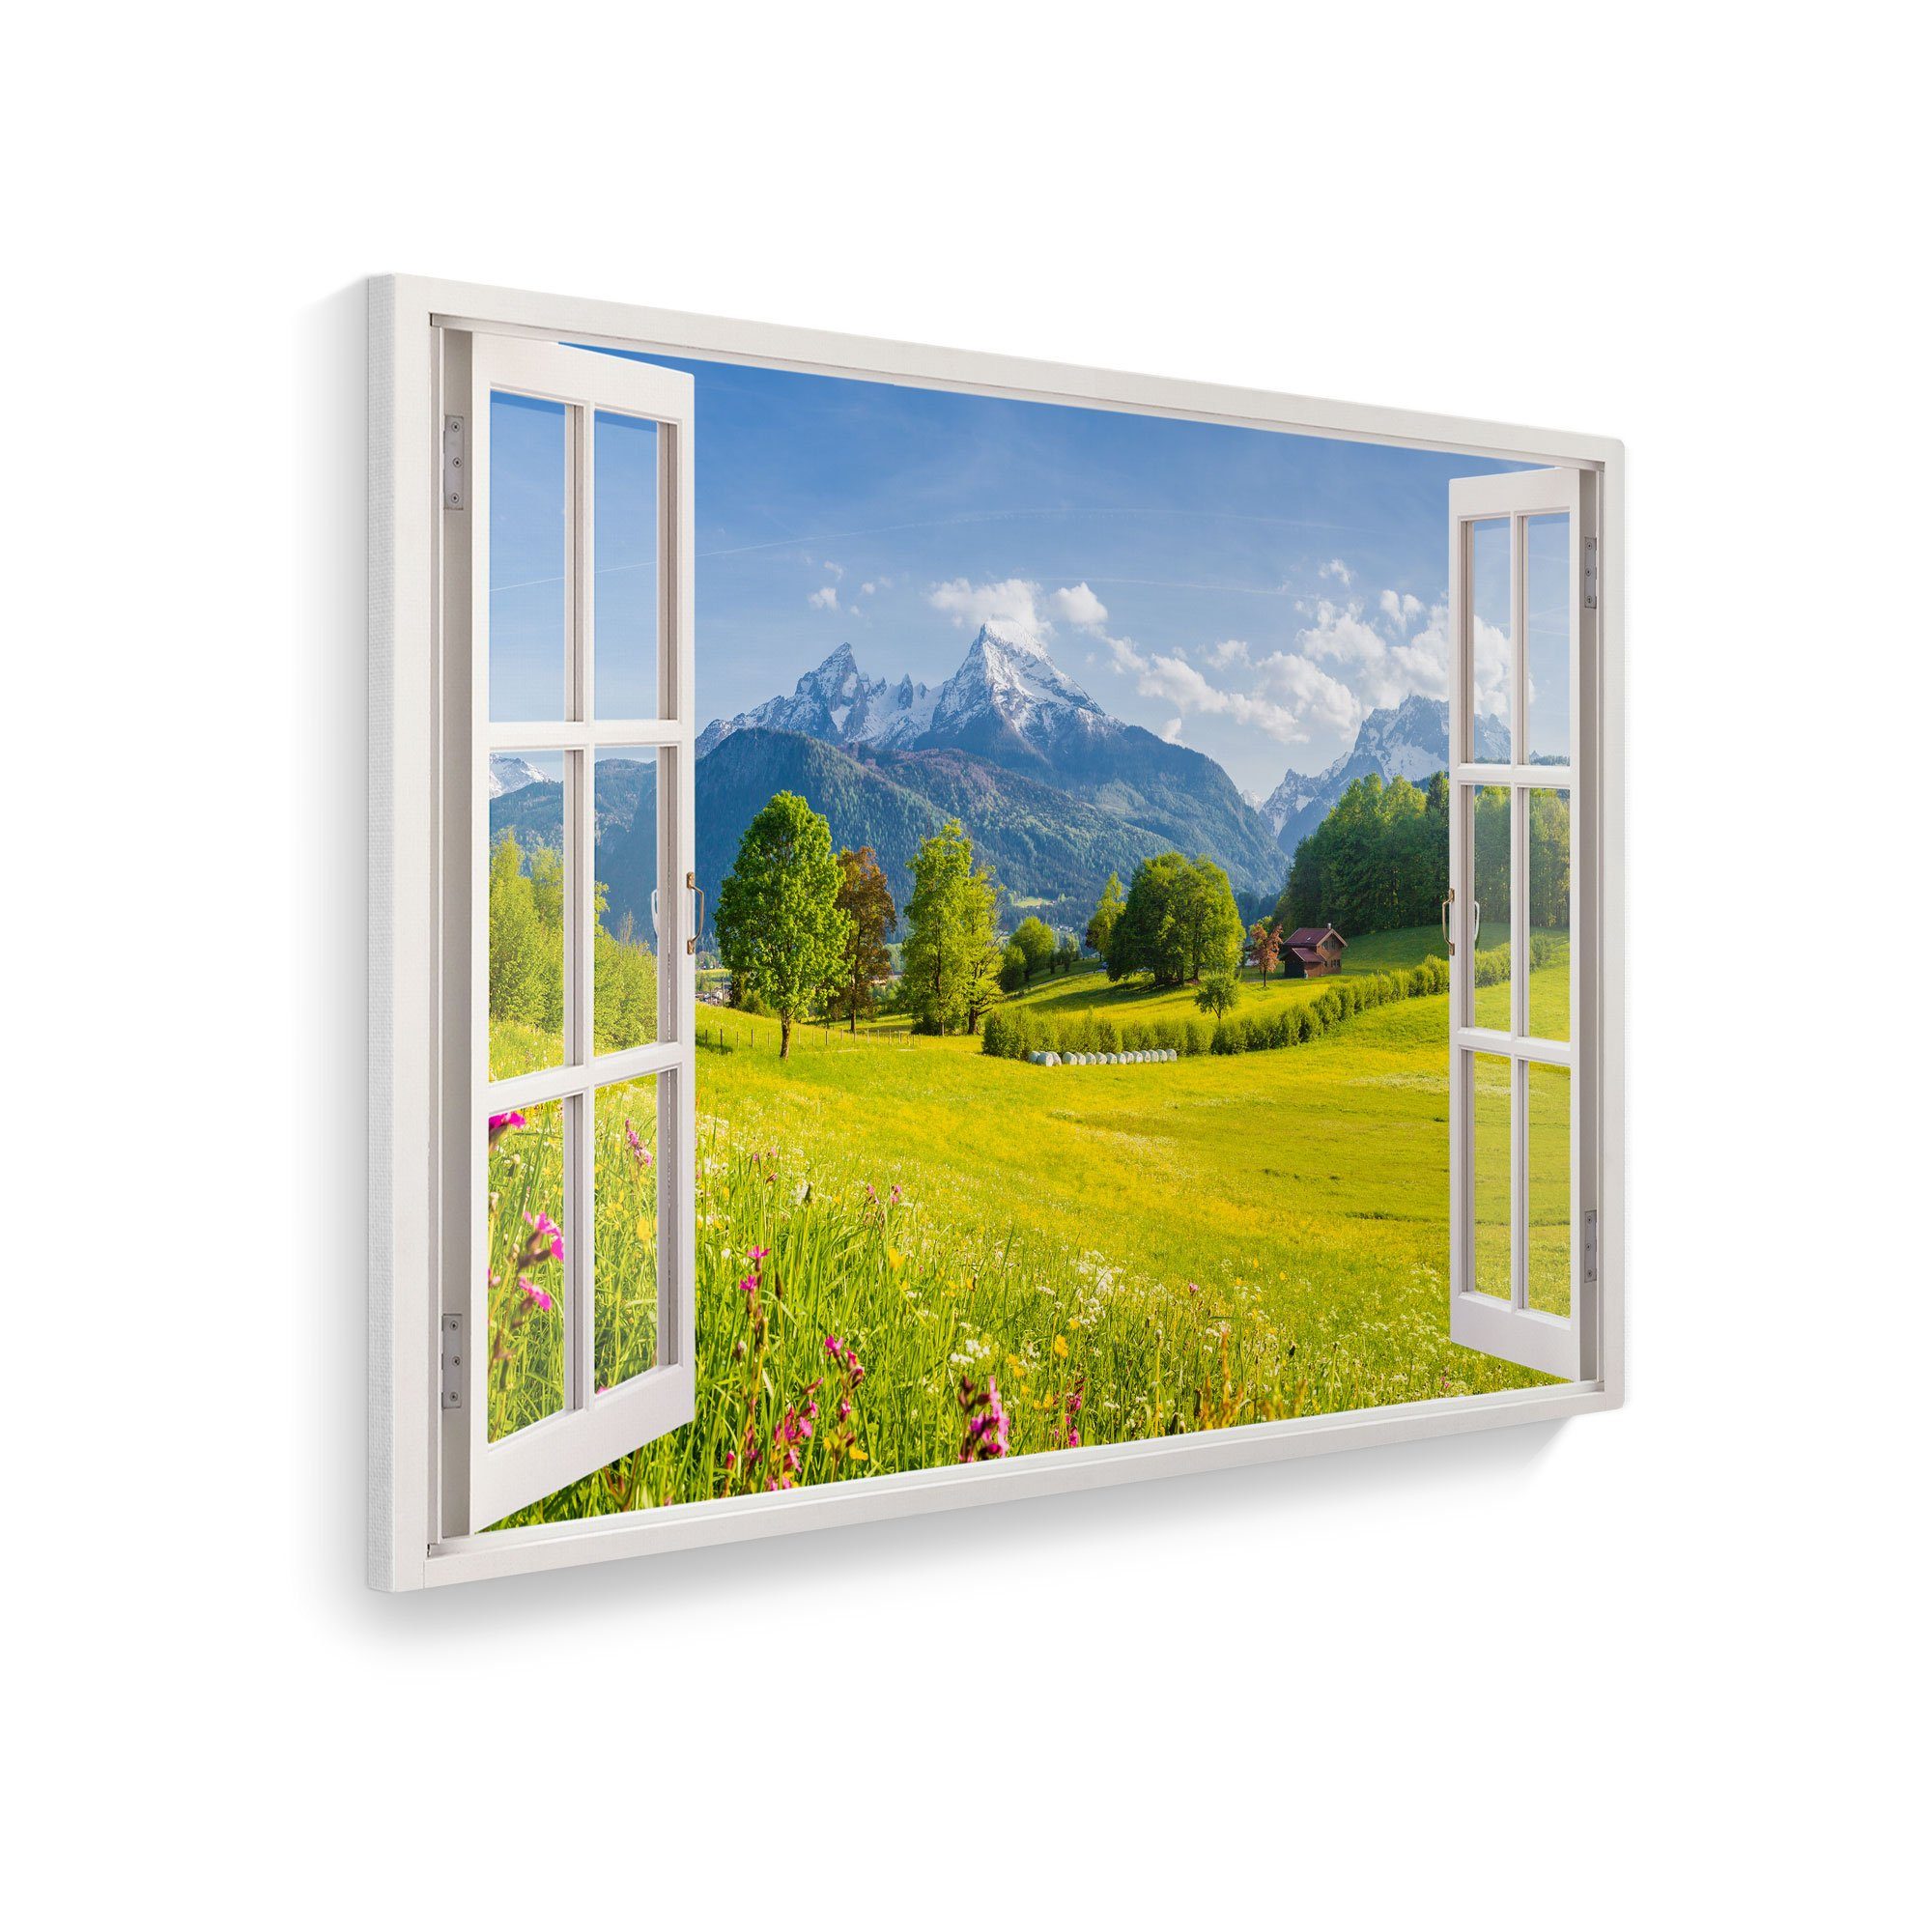 WallSpirit Leinwandbild "Fenster mit Aussicht", Alpenblick, Leinwandbild geeignet für alle Wohnbereiche